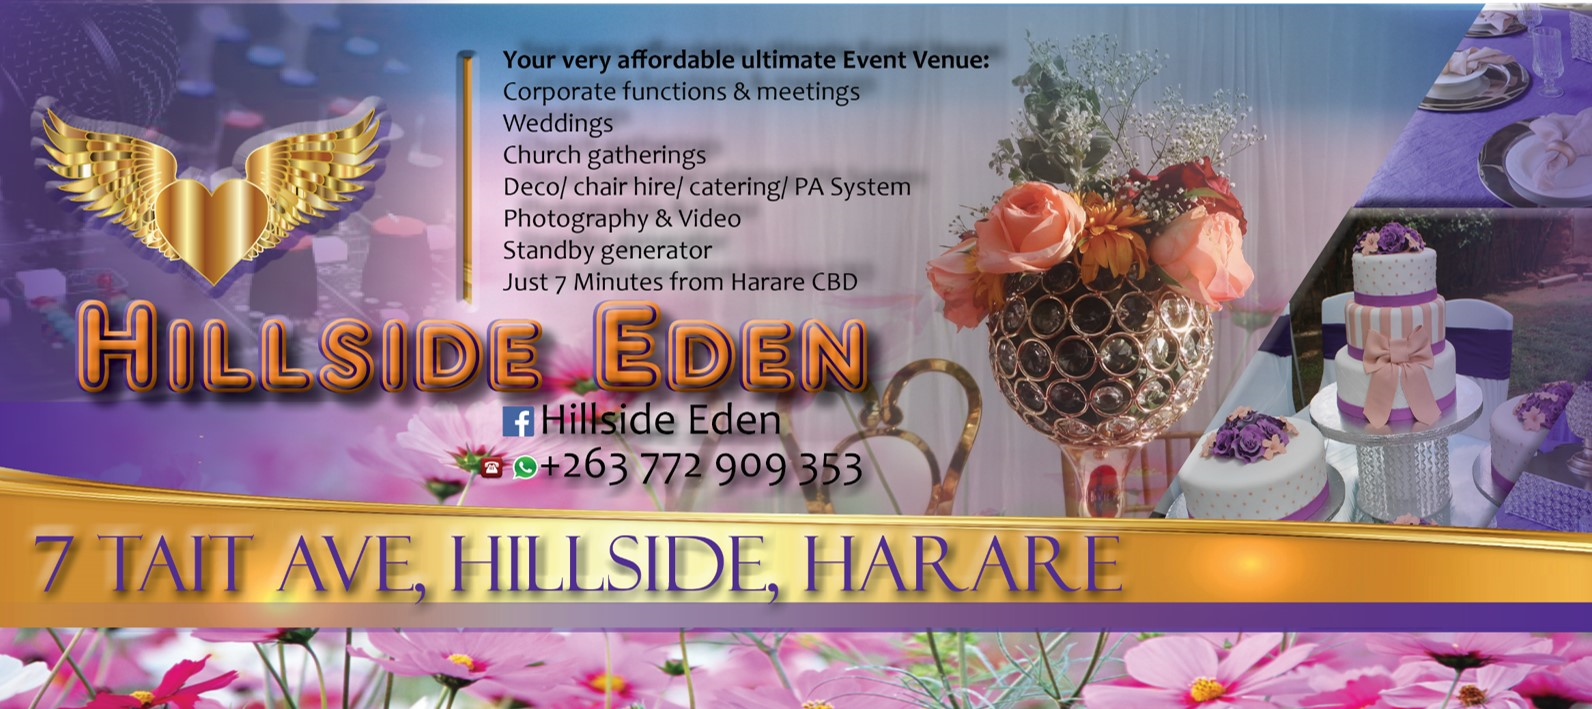 Hillside Eden